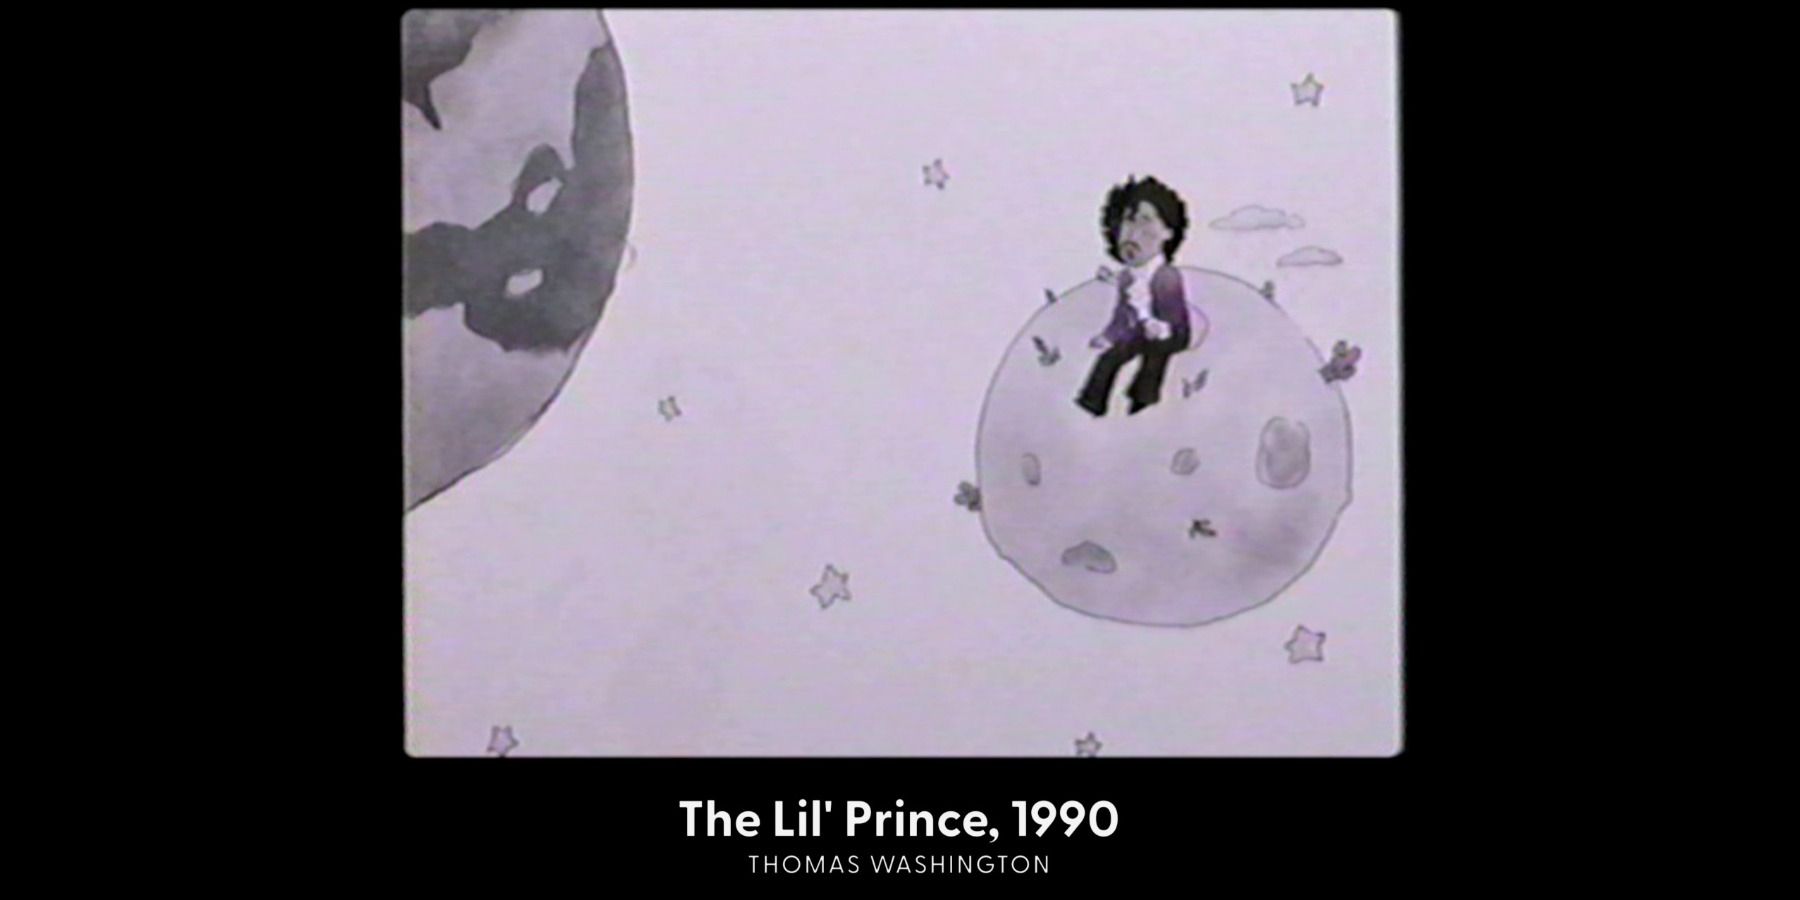 Thomas Washington's The Lil' Prince in Atlanta season 4 mockumentary